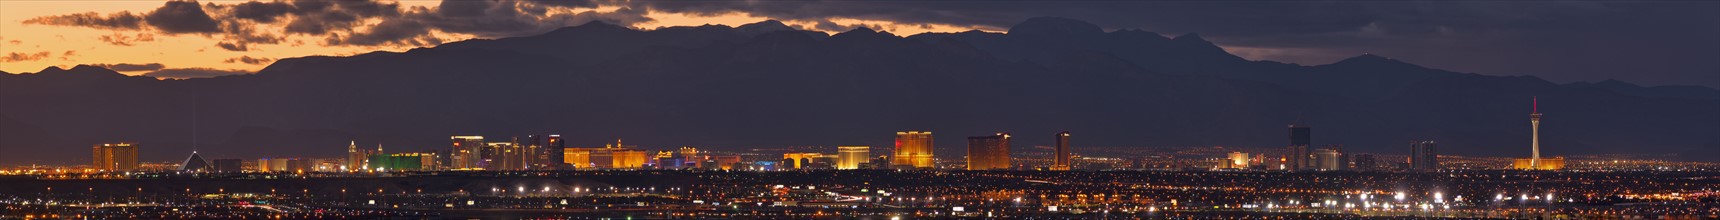 USA, Nevada, Las Vegas skyline. Photo : Gary Weathers